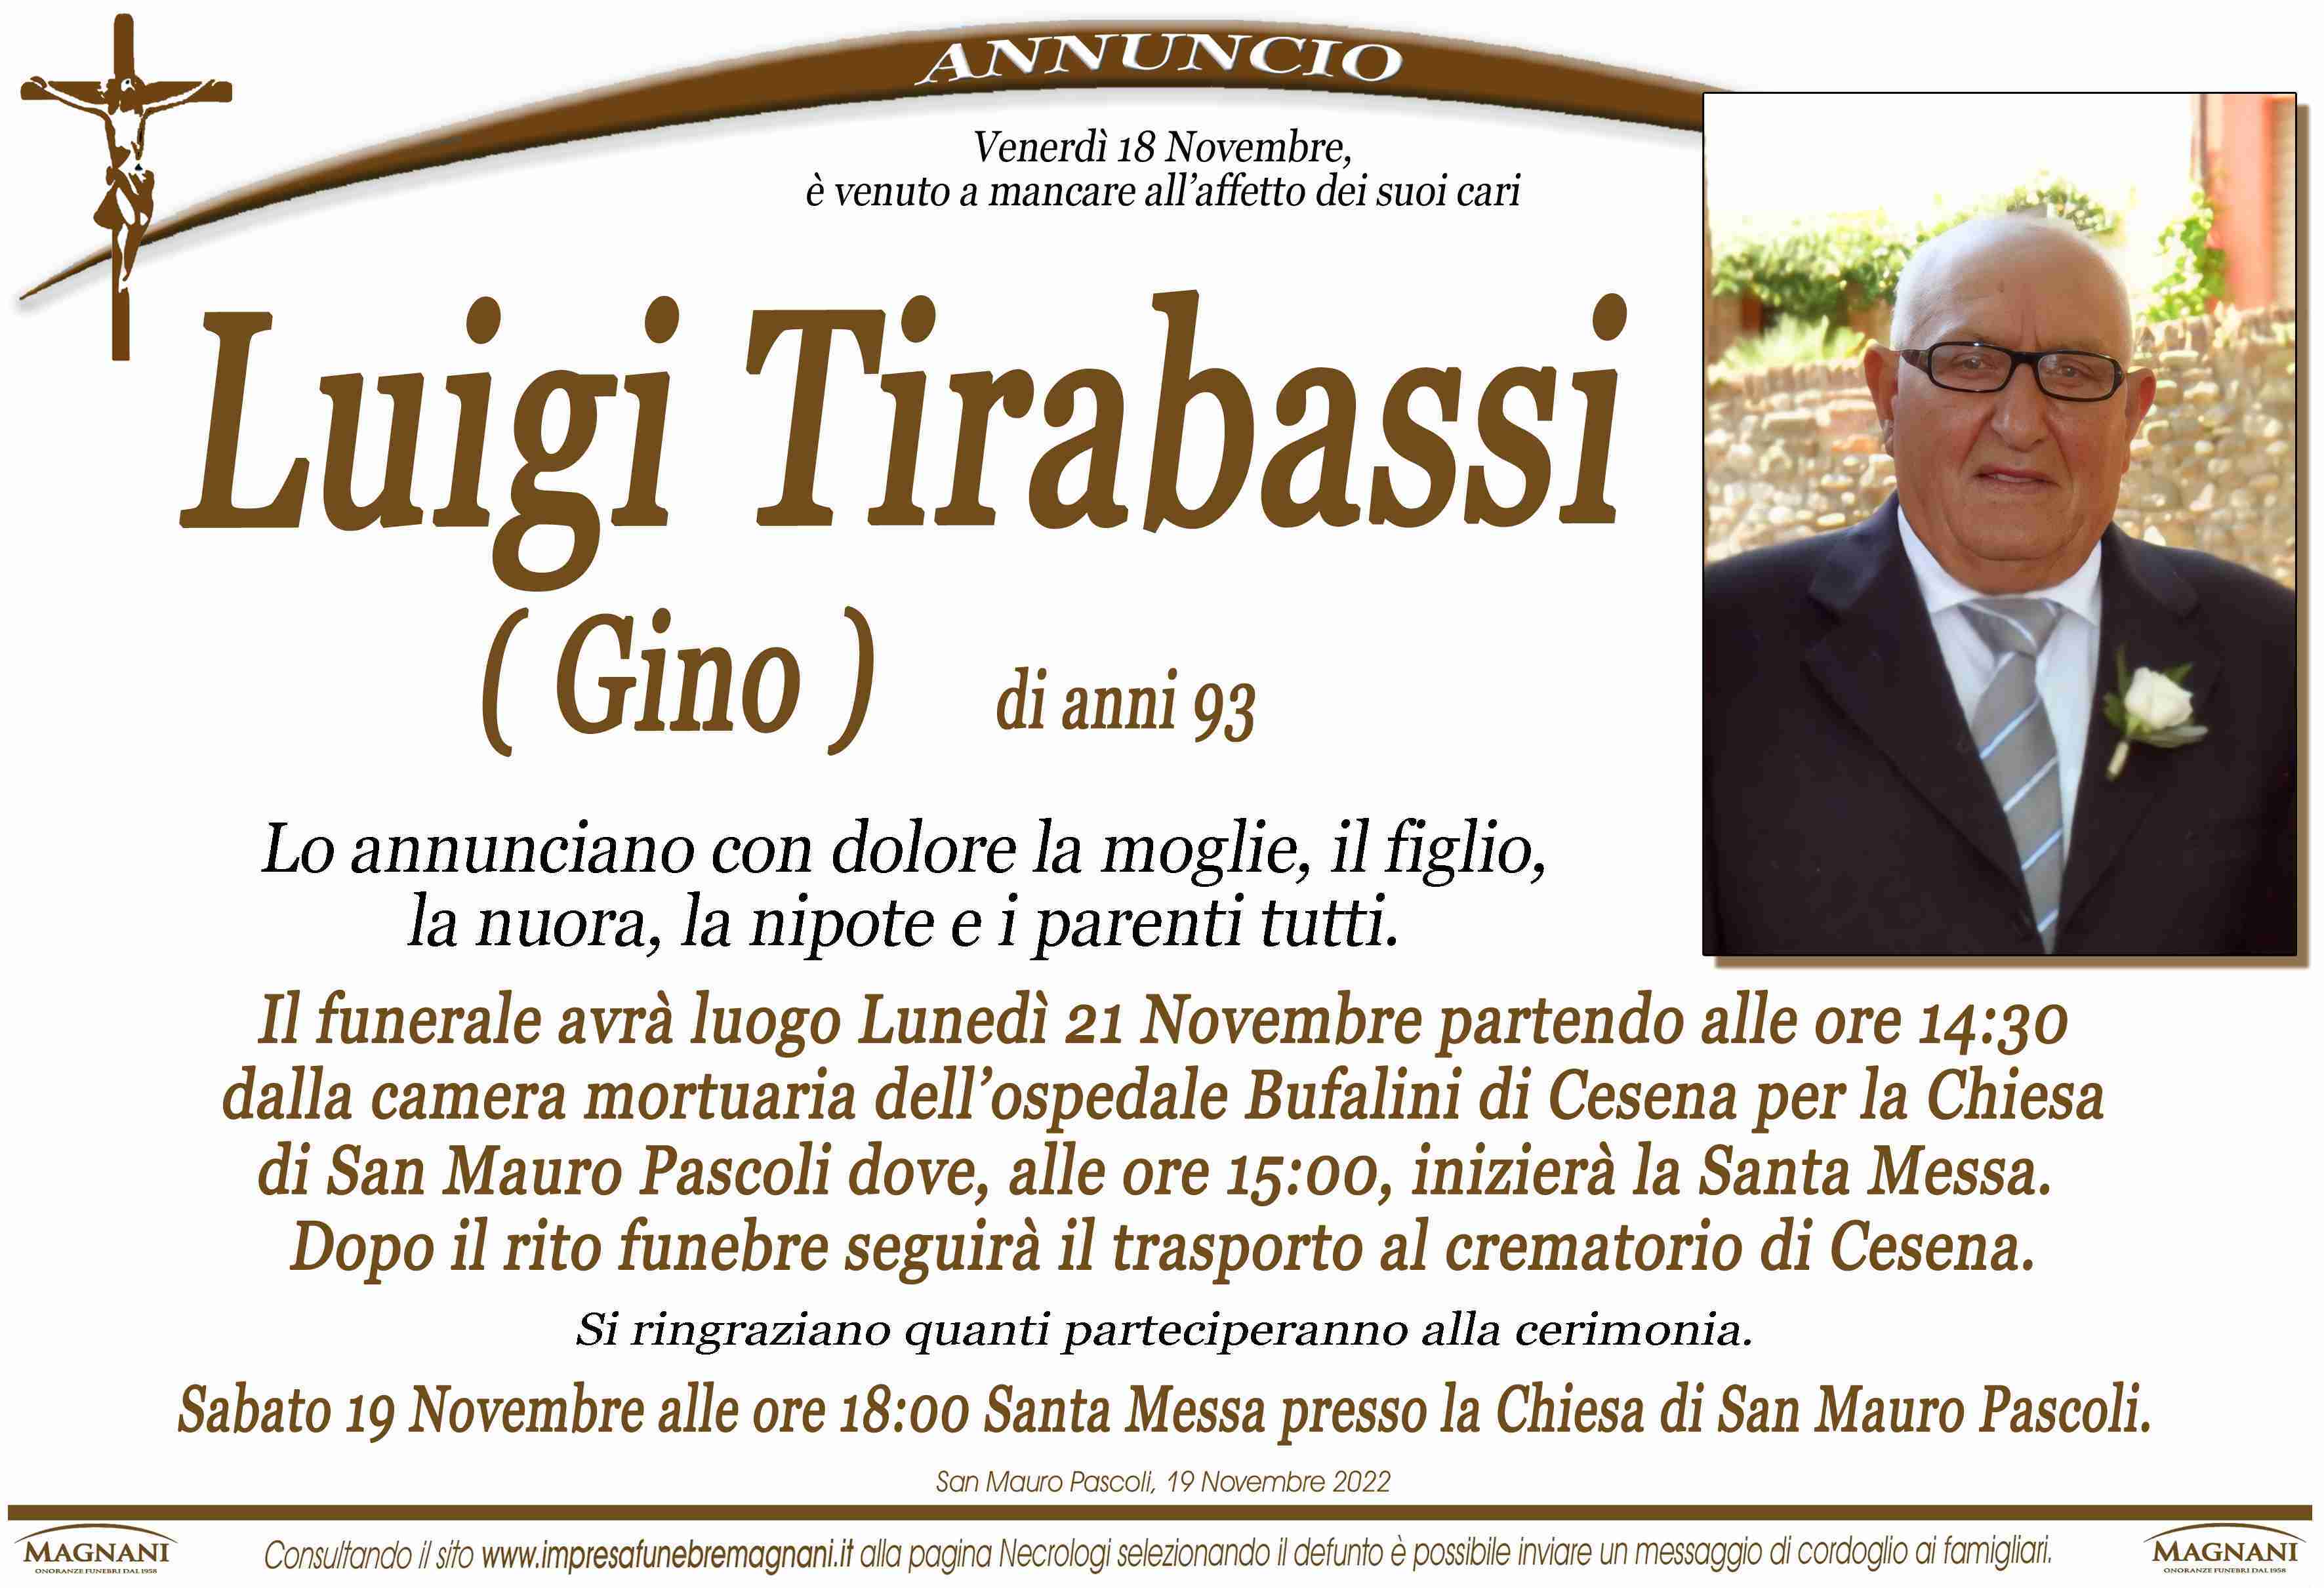 Luigi Tirabassi